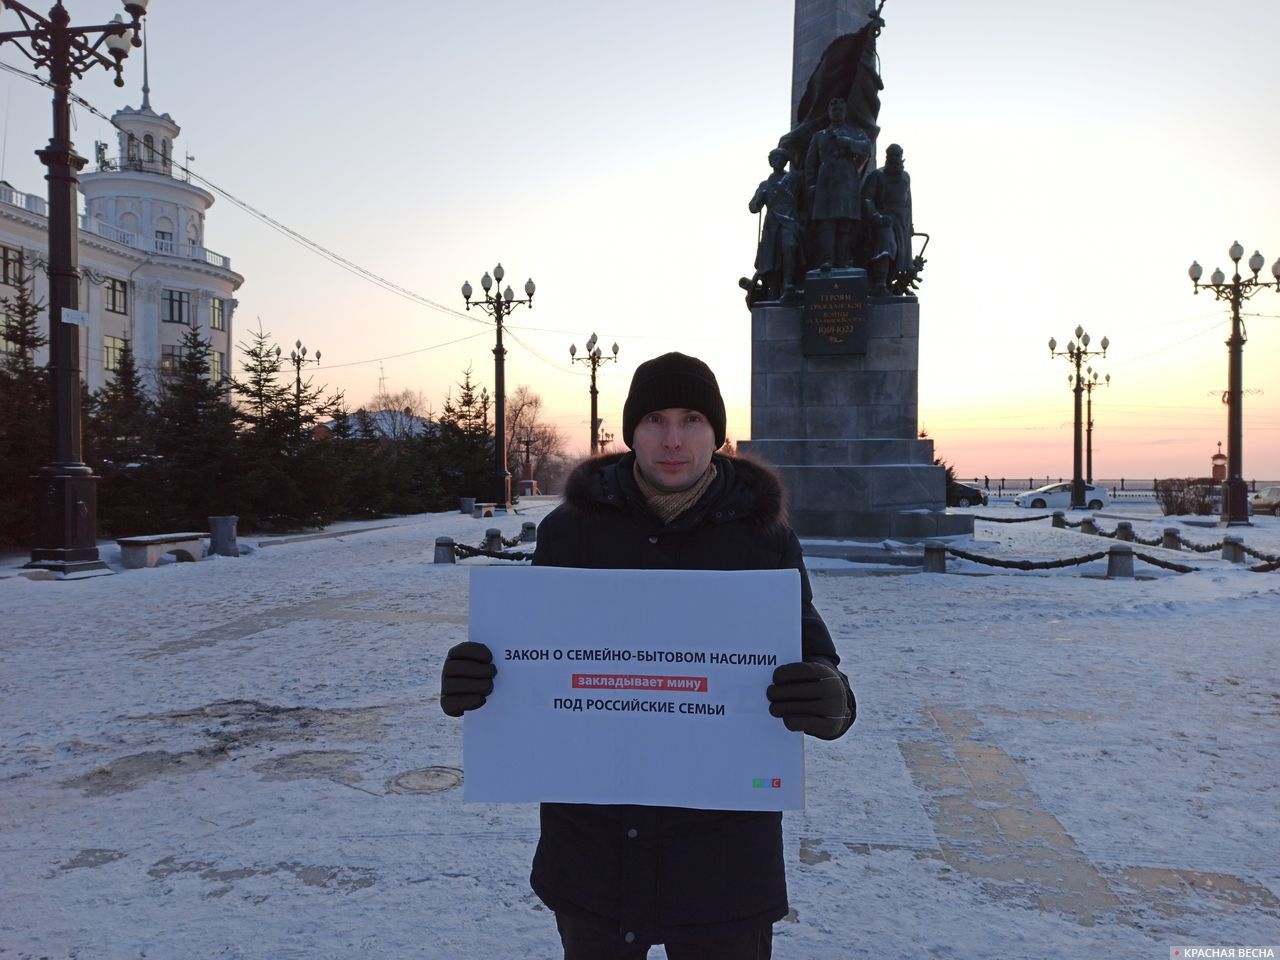 Пикет против закона о семейно-бытовом насилии. Хабаровск